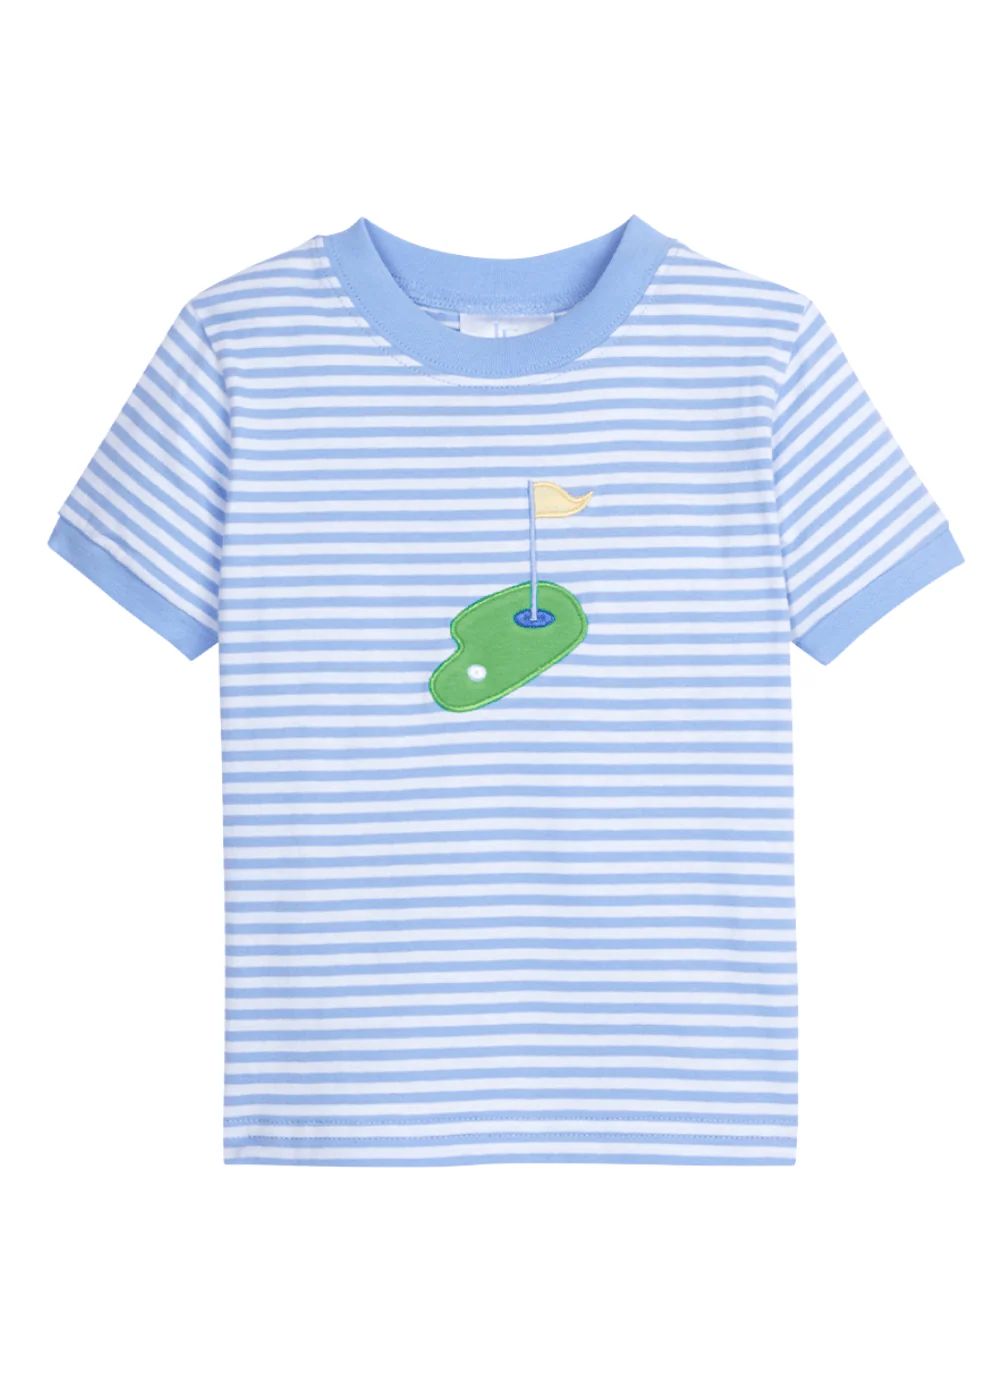 Applique T-Shirt - Golf | Little English